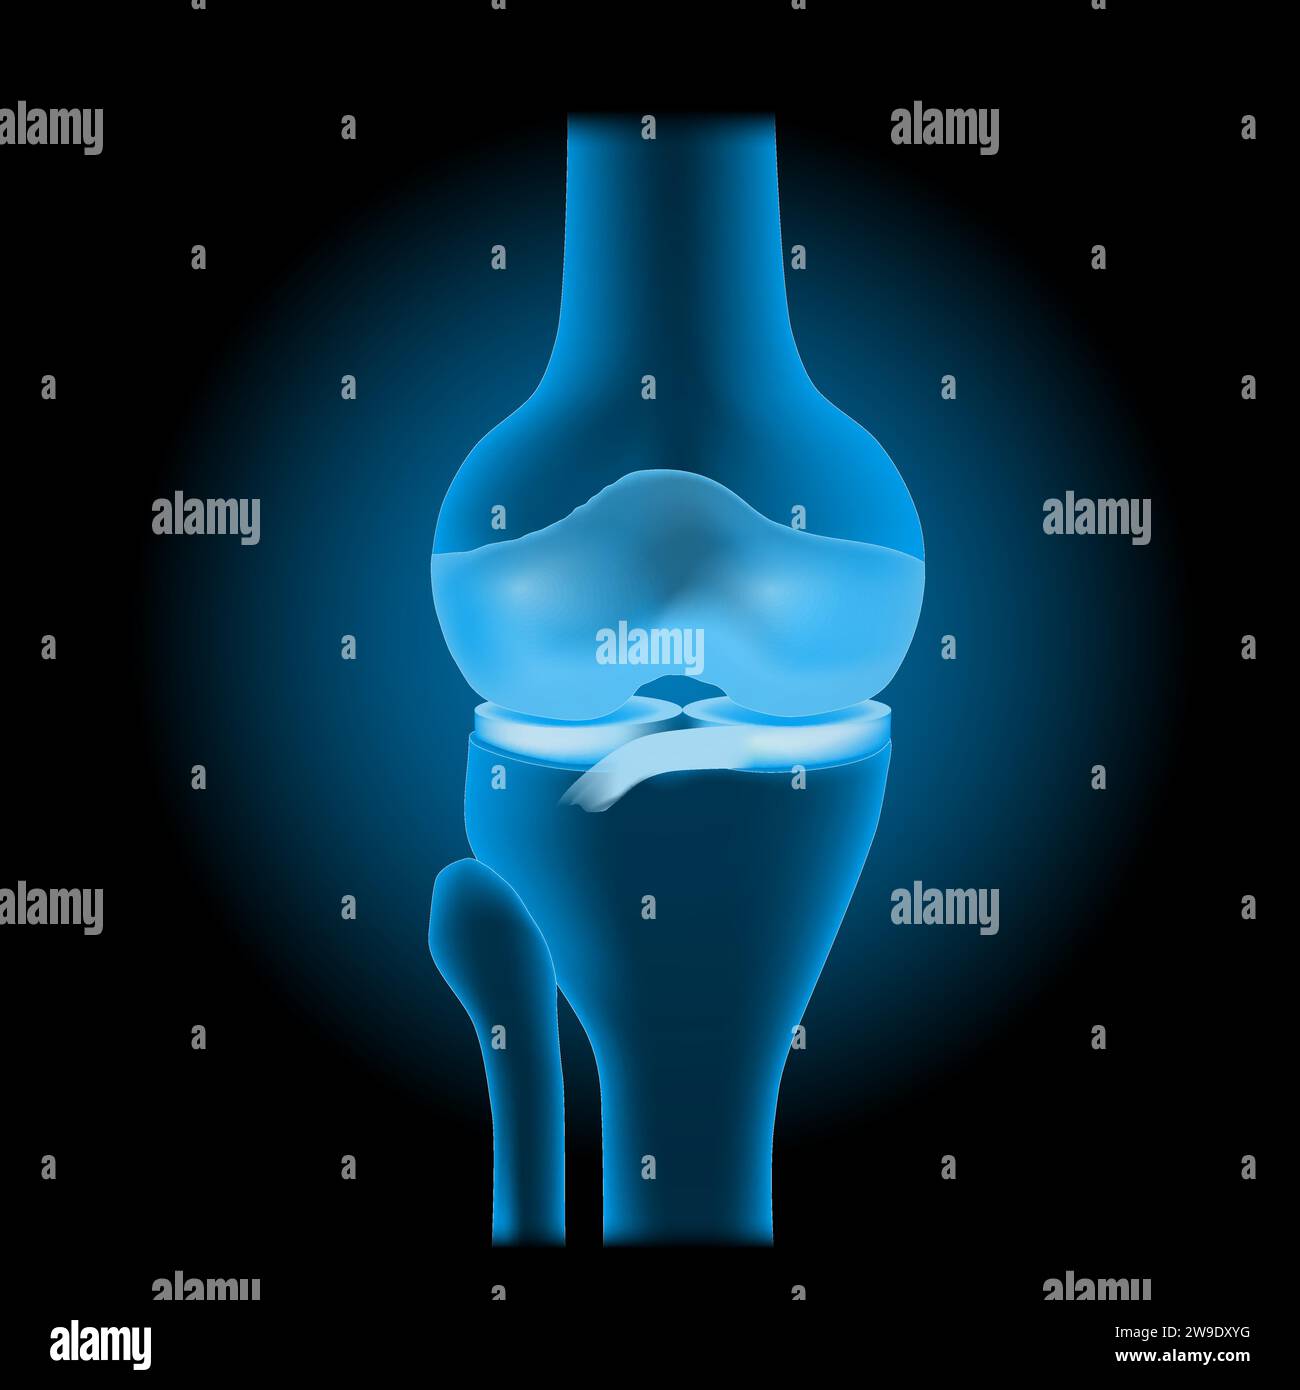 Anatomia articolare del ginocchio. Vista frontale del ginocchio umano con effetto luminoso. Articolazione blu trasparente realistica con ossa, menisco, legamenti e cartilagine su da Illustrazione Vettoriale